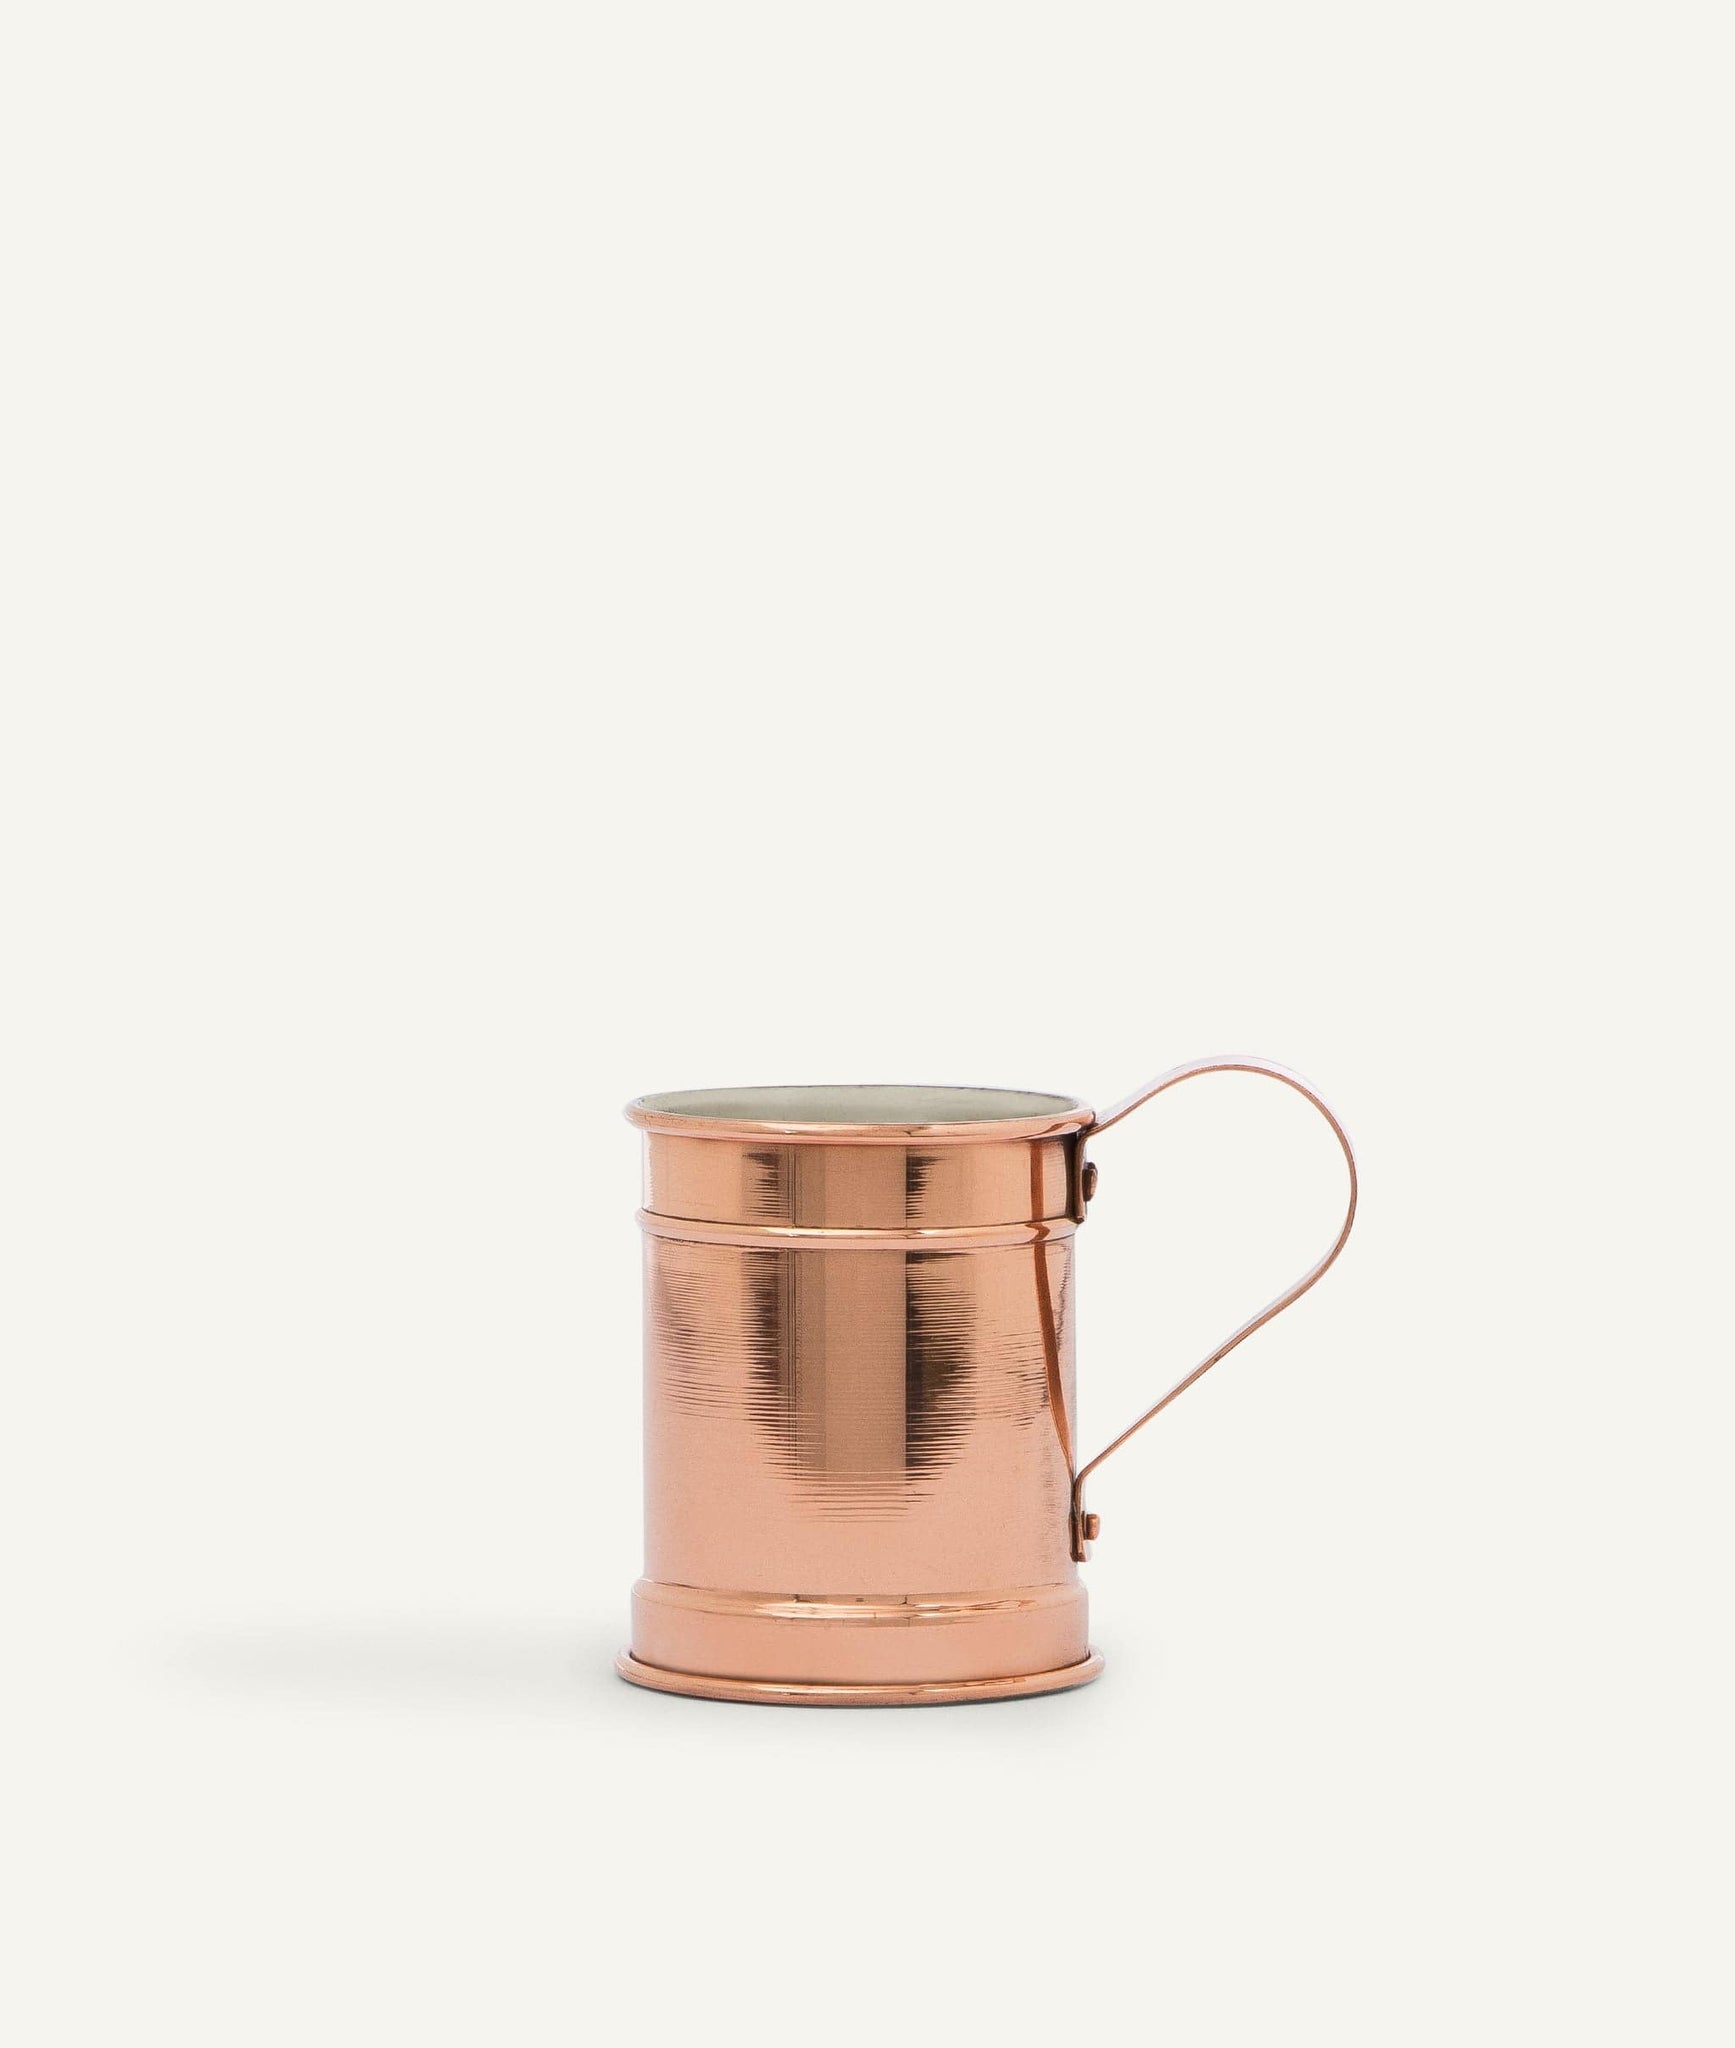 Kriegel Cup in Copper